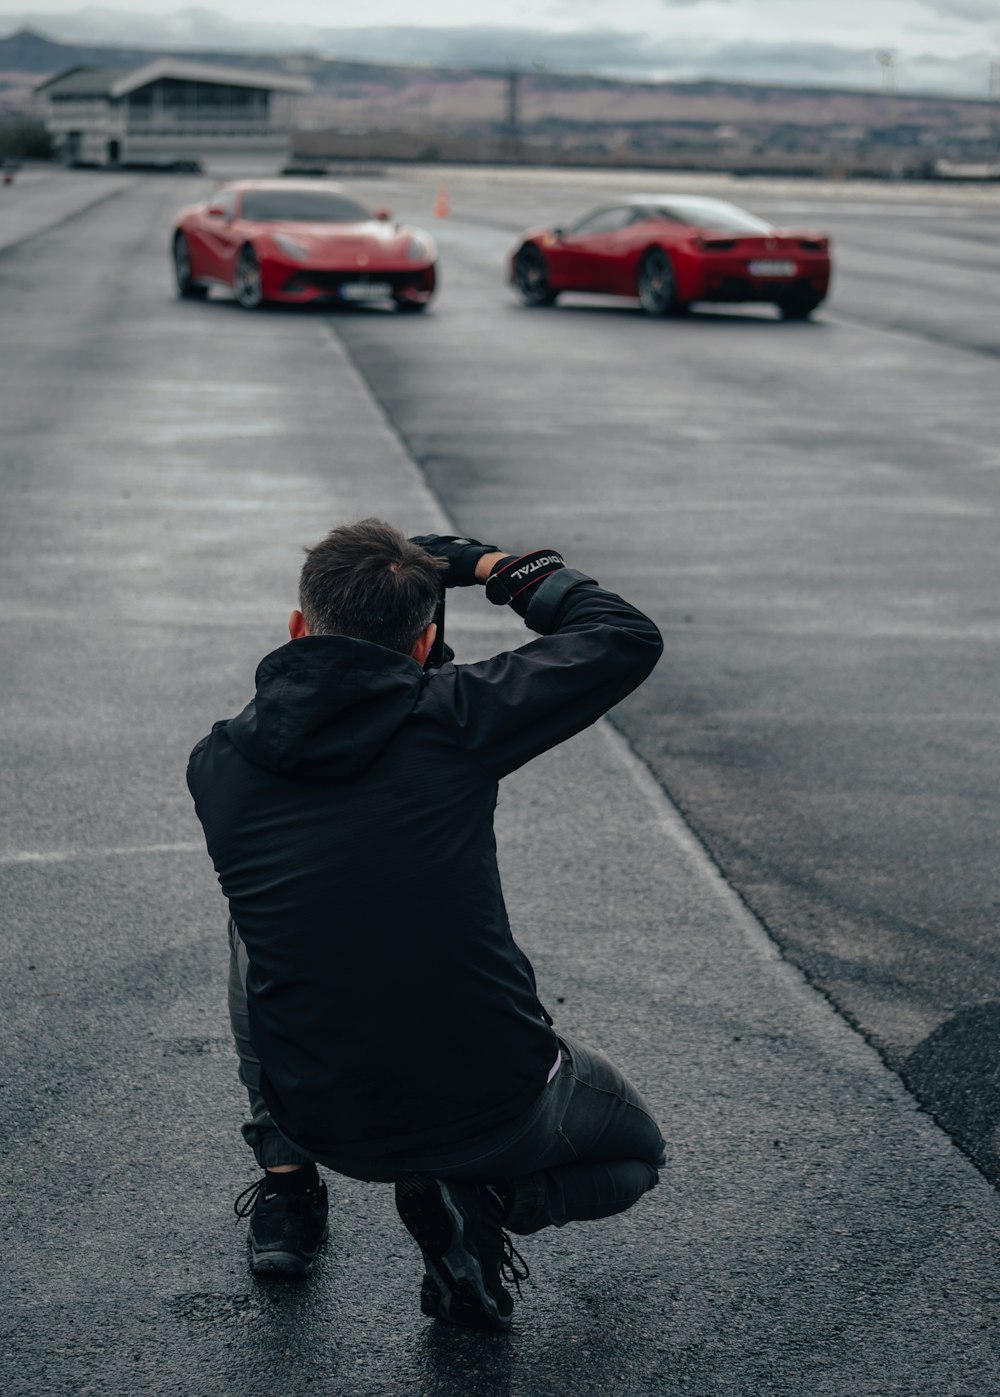 Un hombre tomando una foto de dos autos deportivos rojos